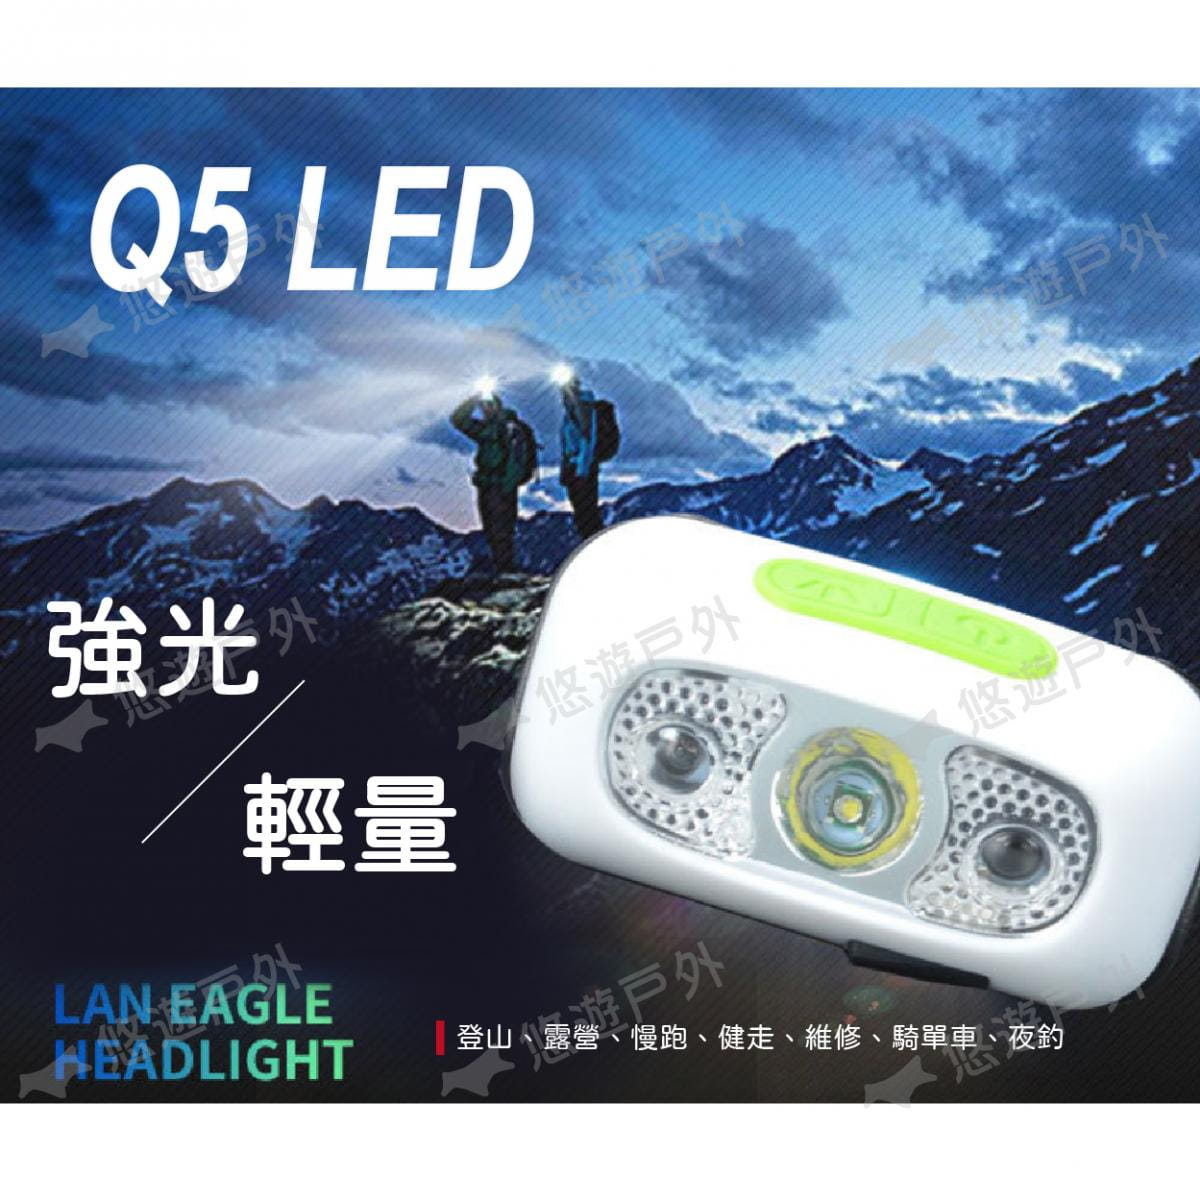 【悠遊】Q5 LED強光輕量頭燈 感應頭燈 USB充電迷你 防水 可拆 居家 露營 夜釣 應急照明 1